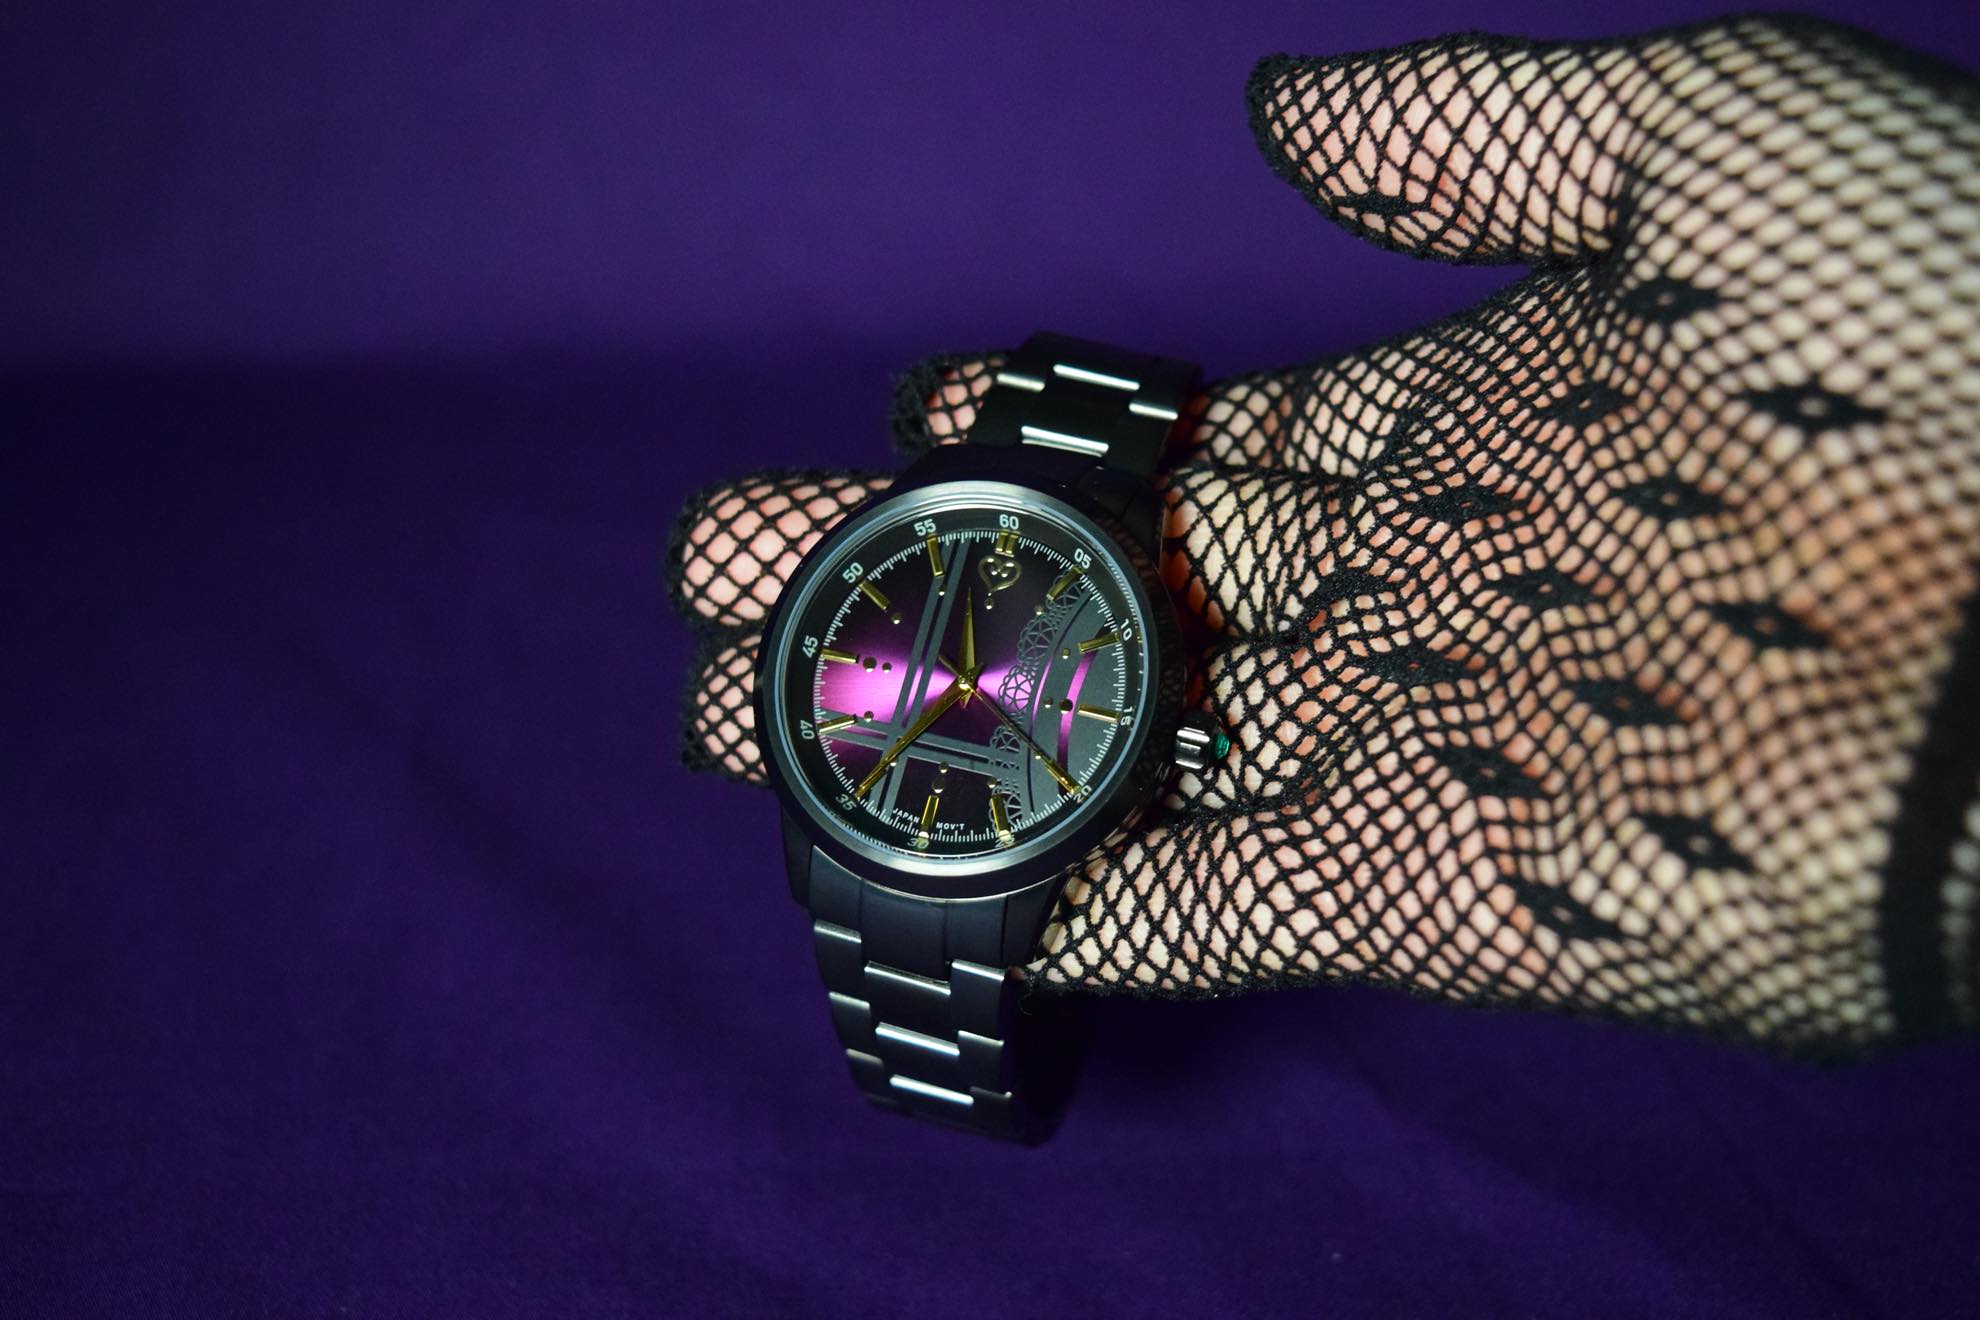 フレデリカ好きにはたまらない 小悪魔的な雰囲気が漂う アイドルマスター シンデレラガールズ の腕時計を付けて ワンランク上のプロデュース活動をしよう